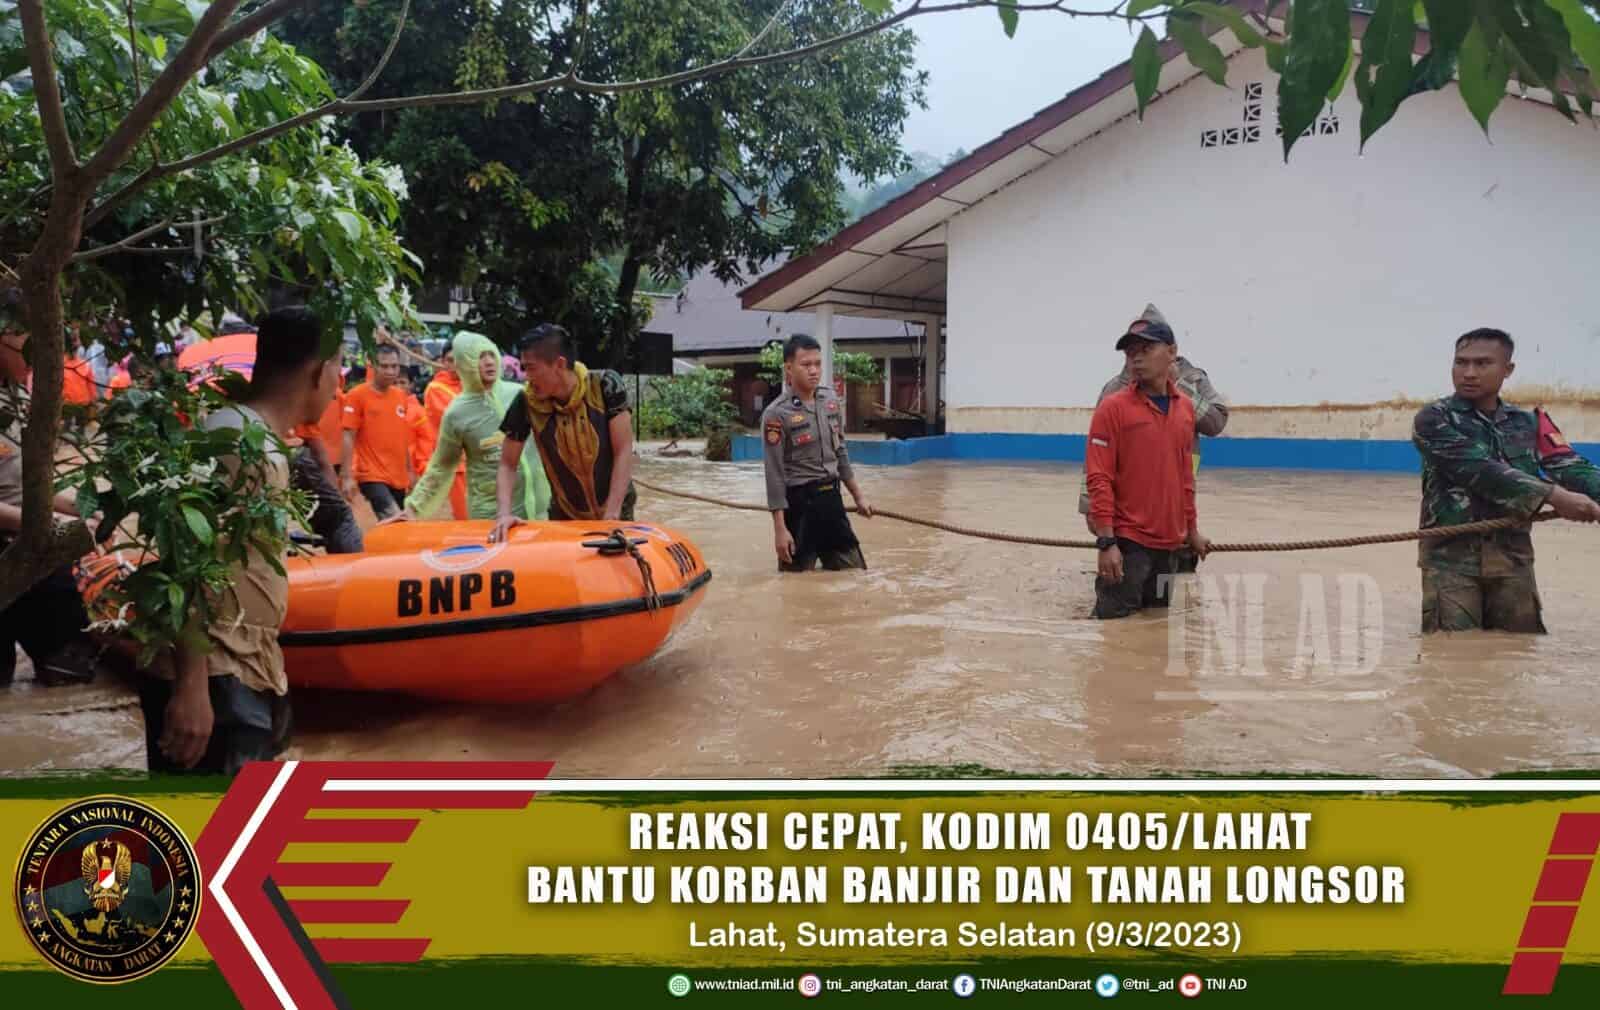 Reaksi Cepat, Kodim 0405/Lahat Bantu Korban Banjir dan Tanah Longsor